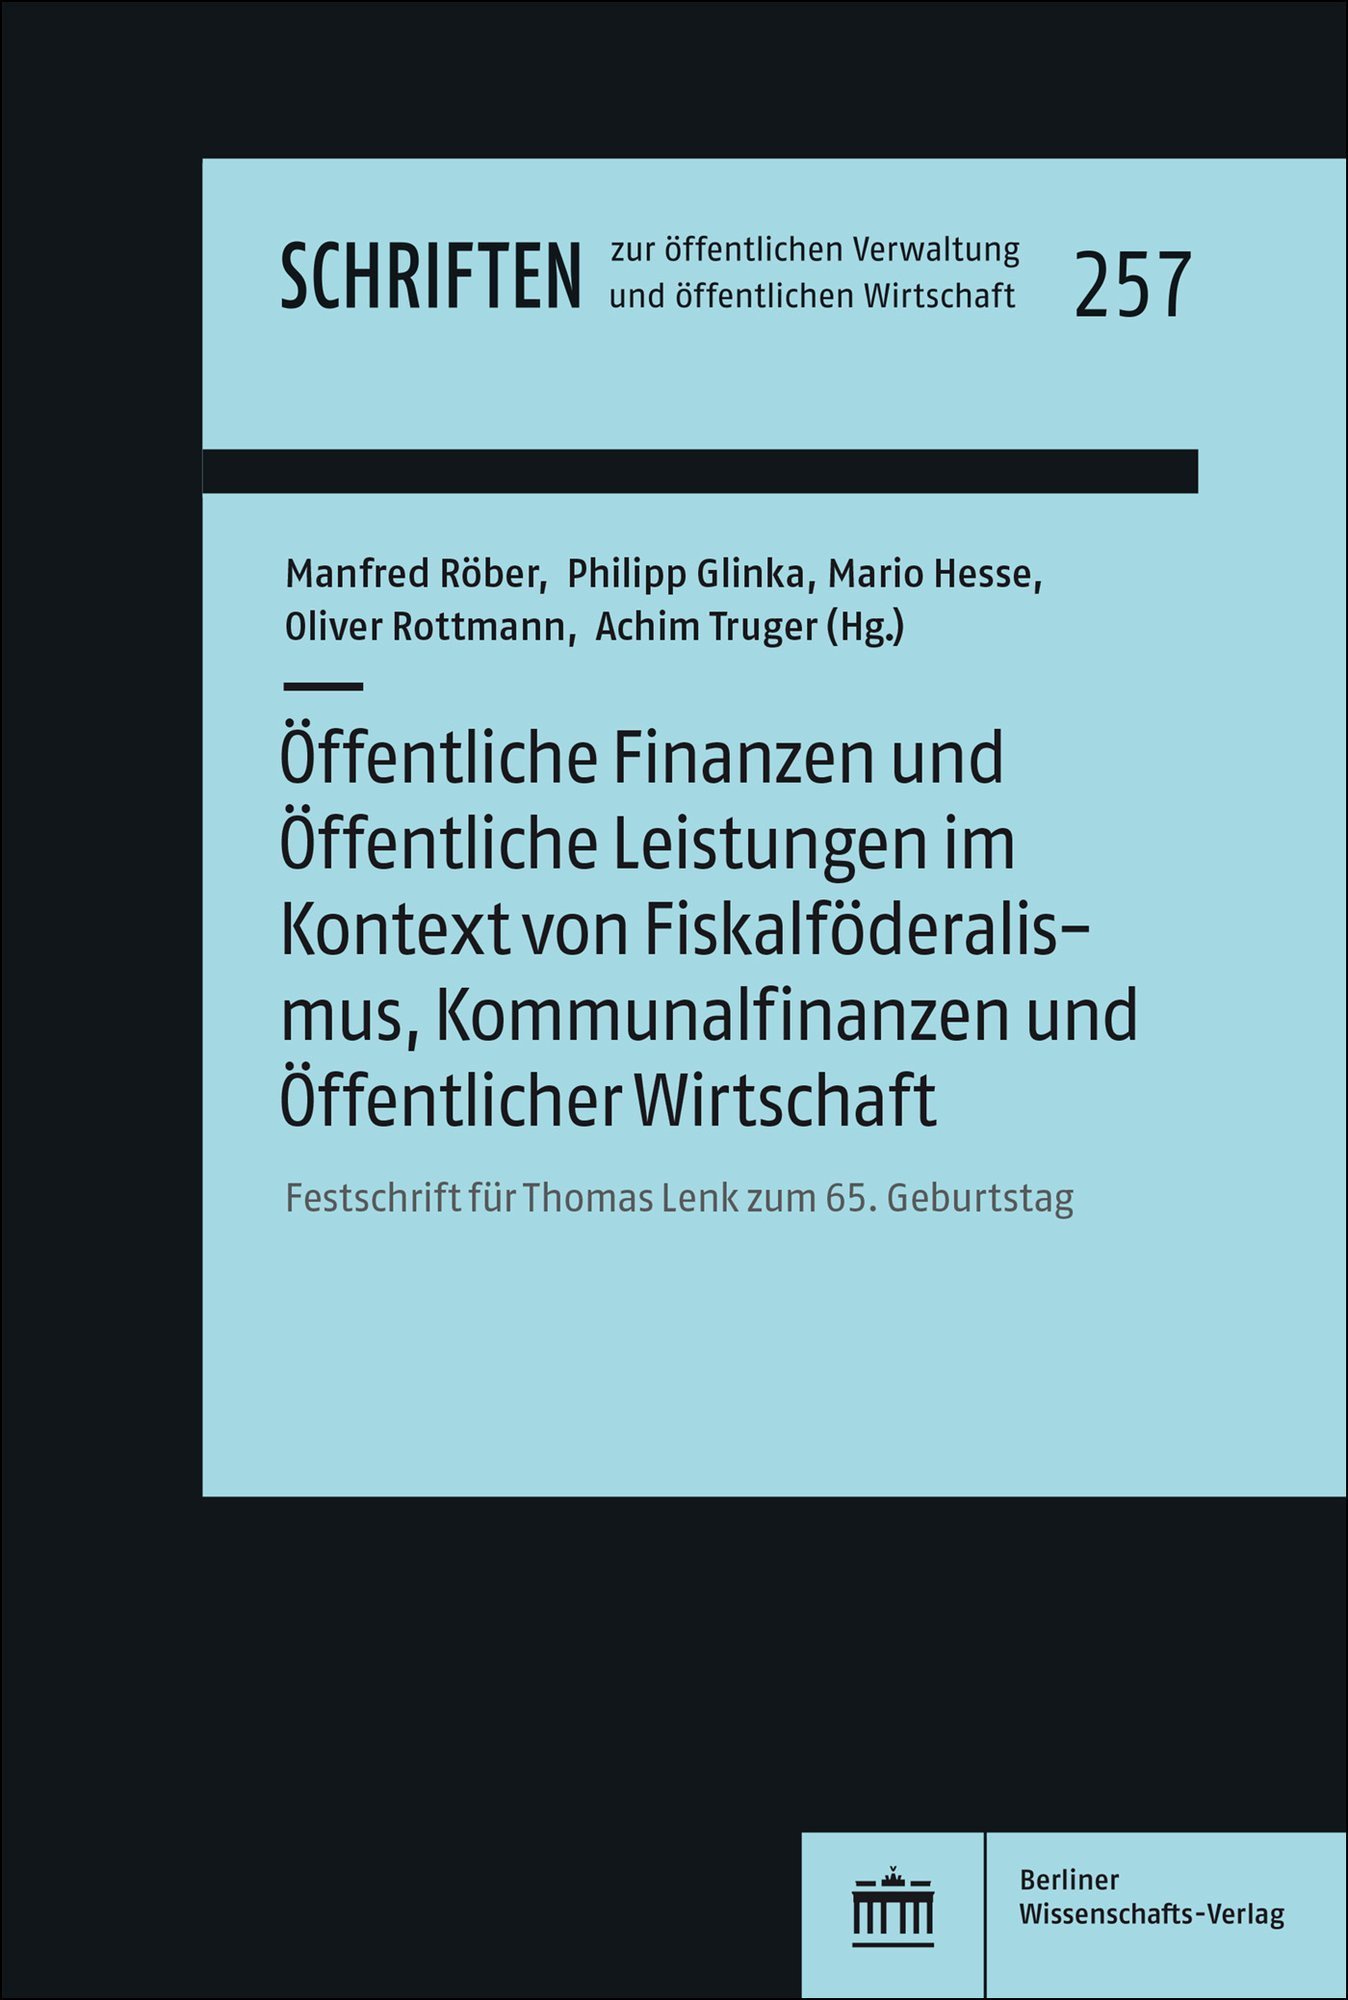 Öffentliche Finanzen und Öffentliche Leistungen im Kontext von Fiskalföderalismus, Kommunalfinanzen und Öffentlicher Wirtschaft